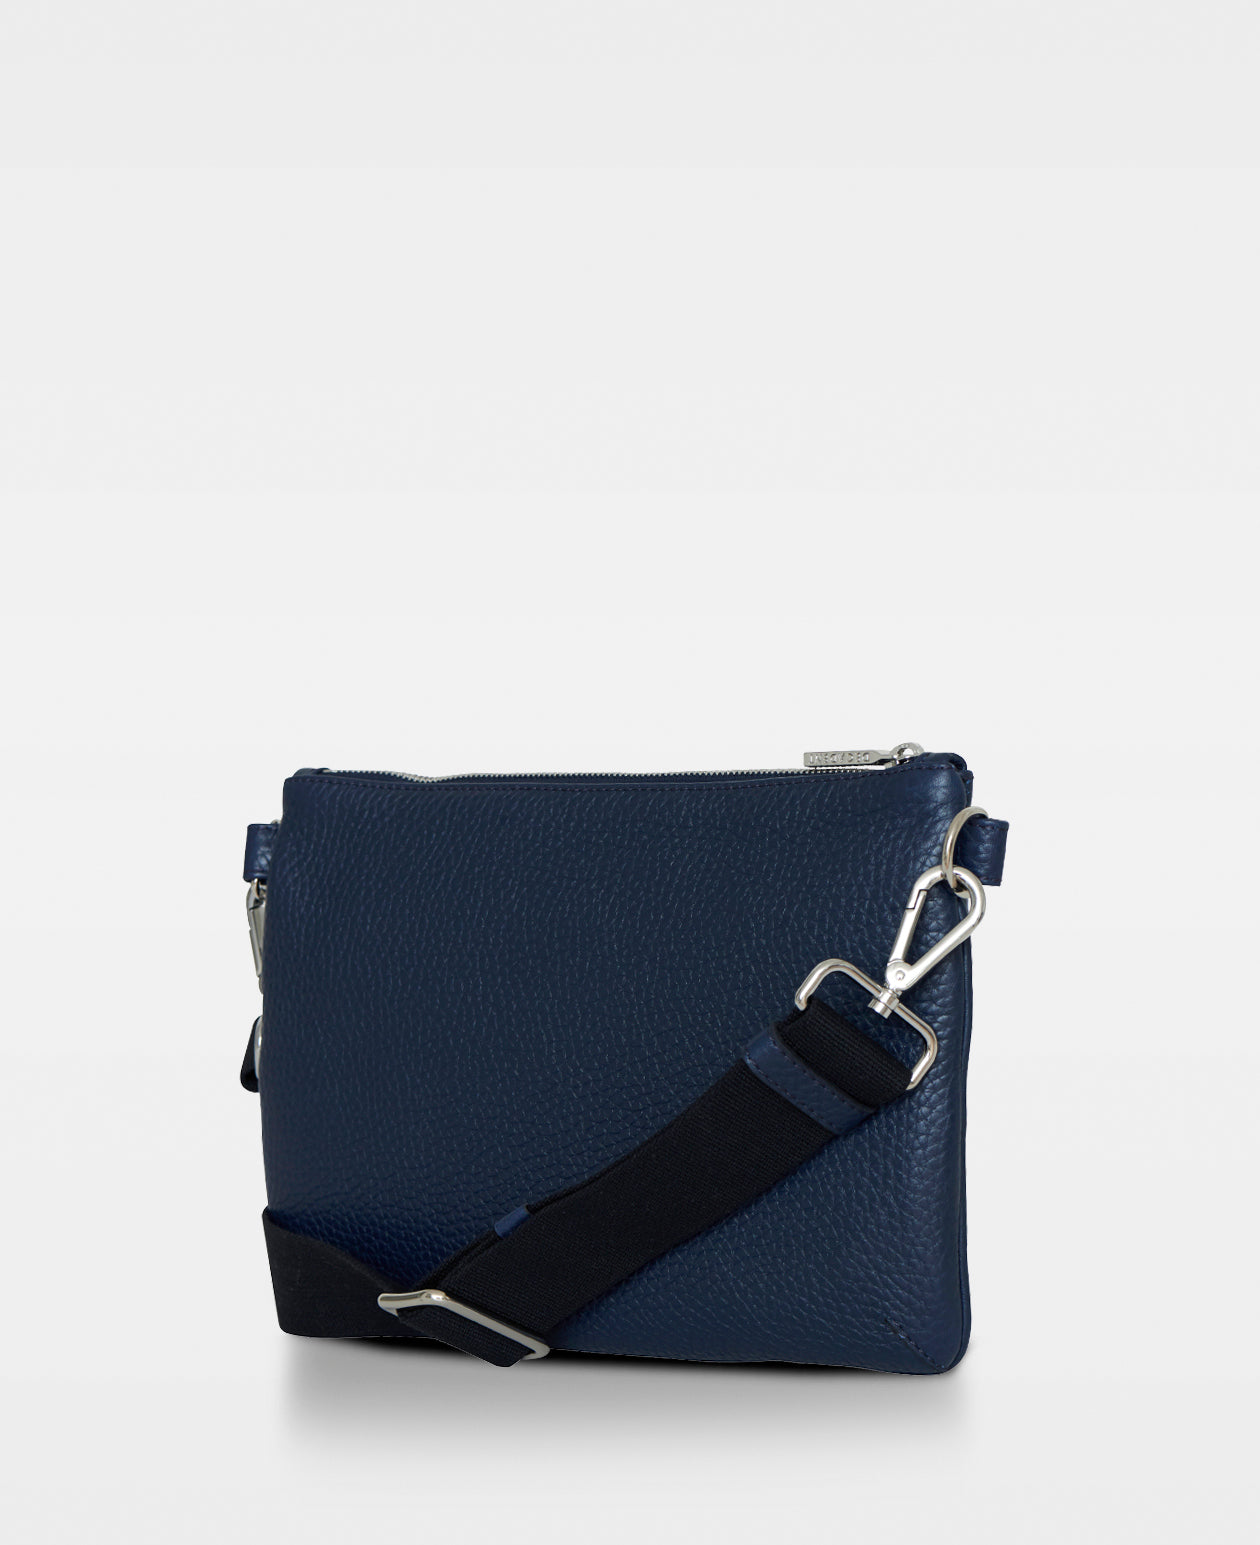 JESSIE belt bag - Navy